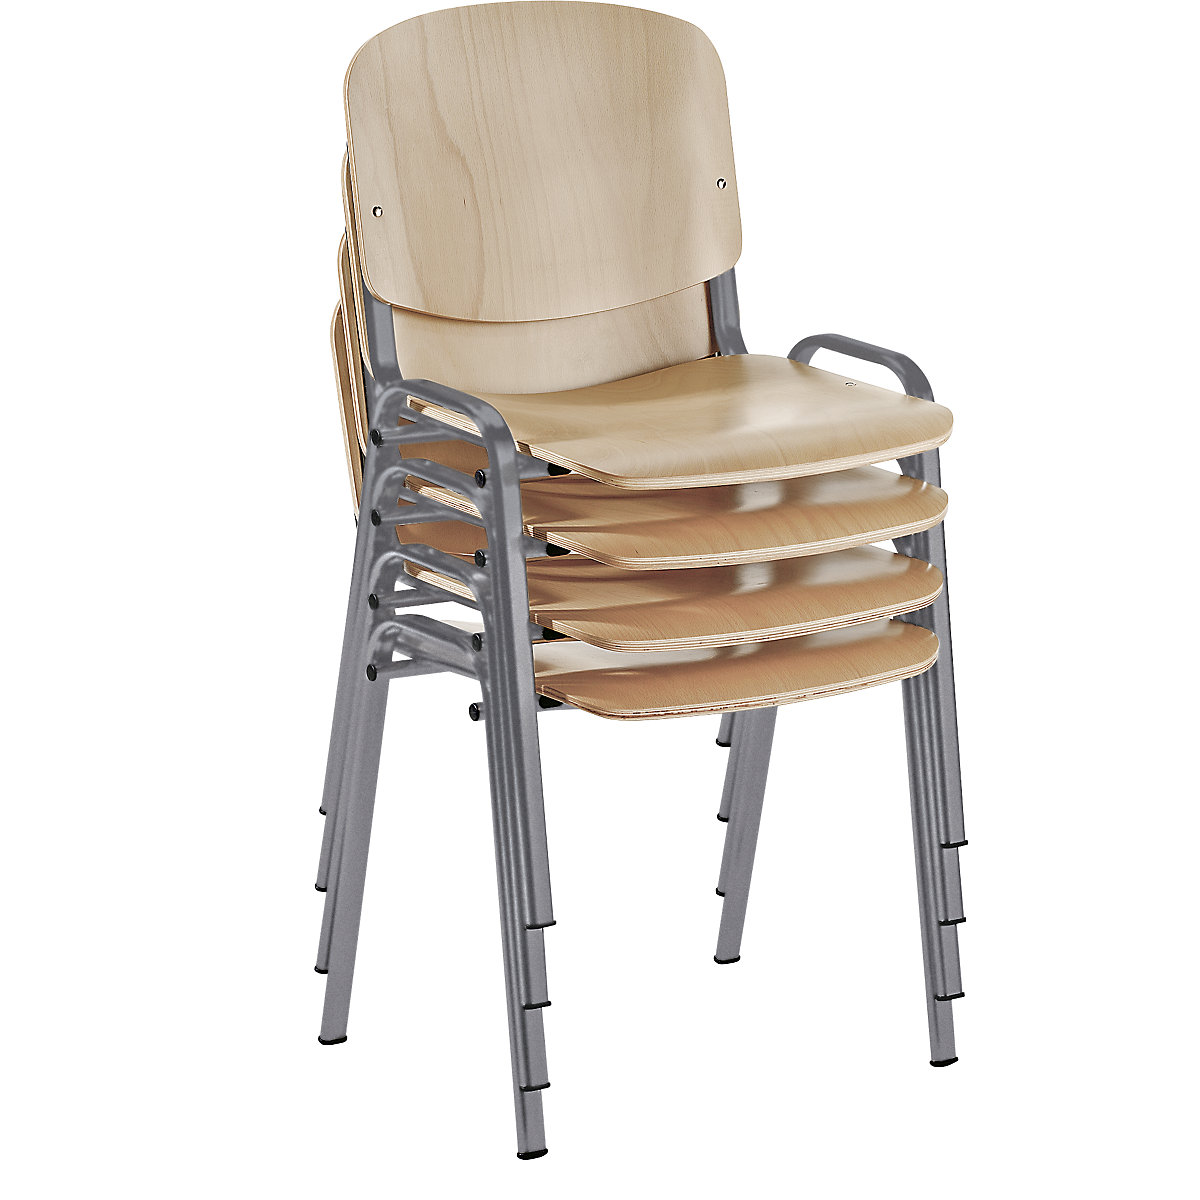 Cadeira empilhável, com forma ergonómica